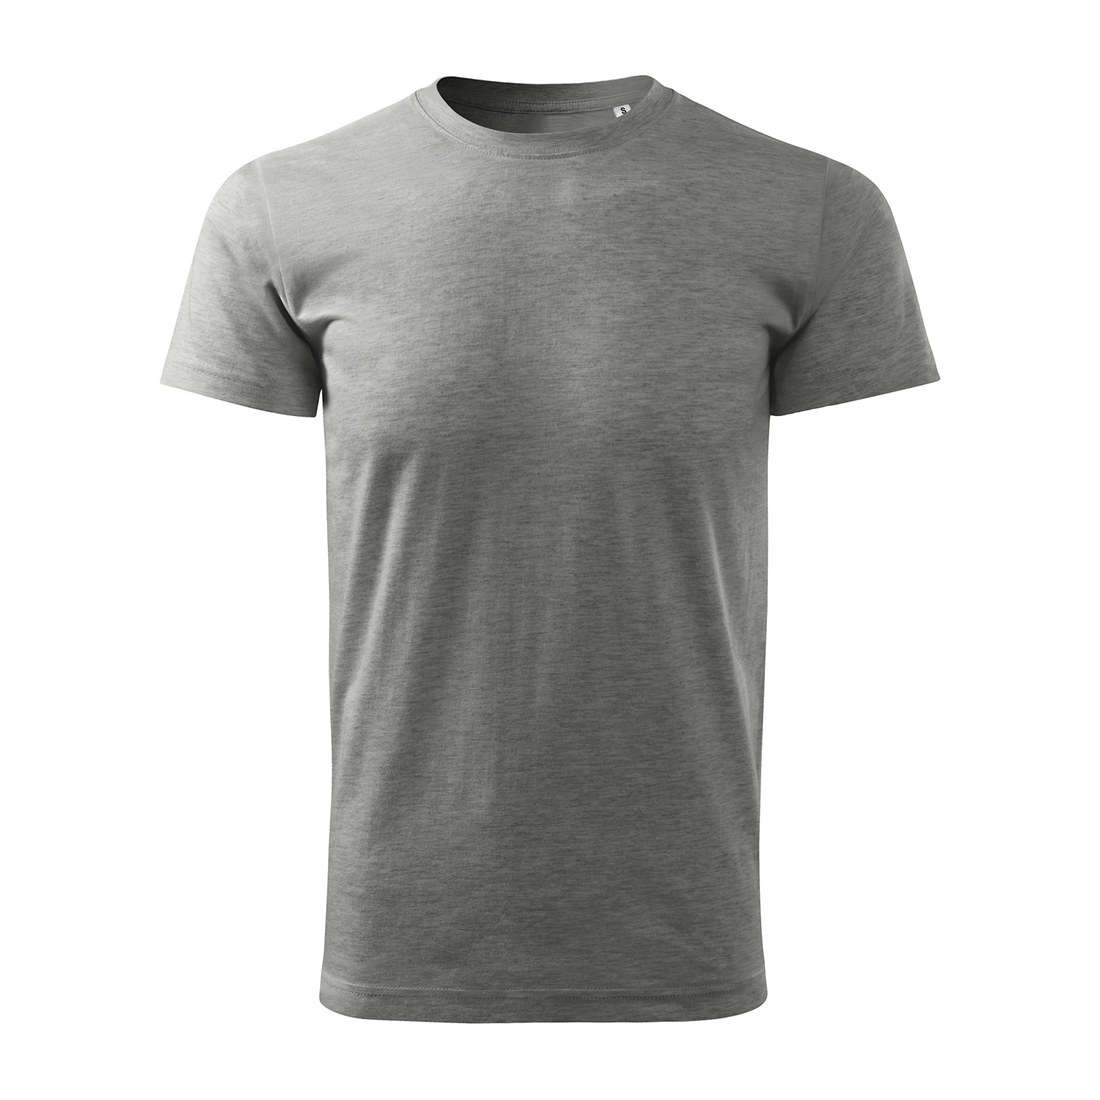 Tee-shirt homme BASIC - Les vêtements de protection